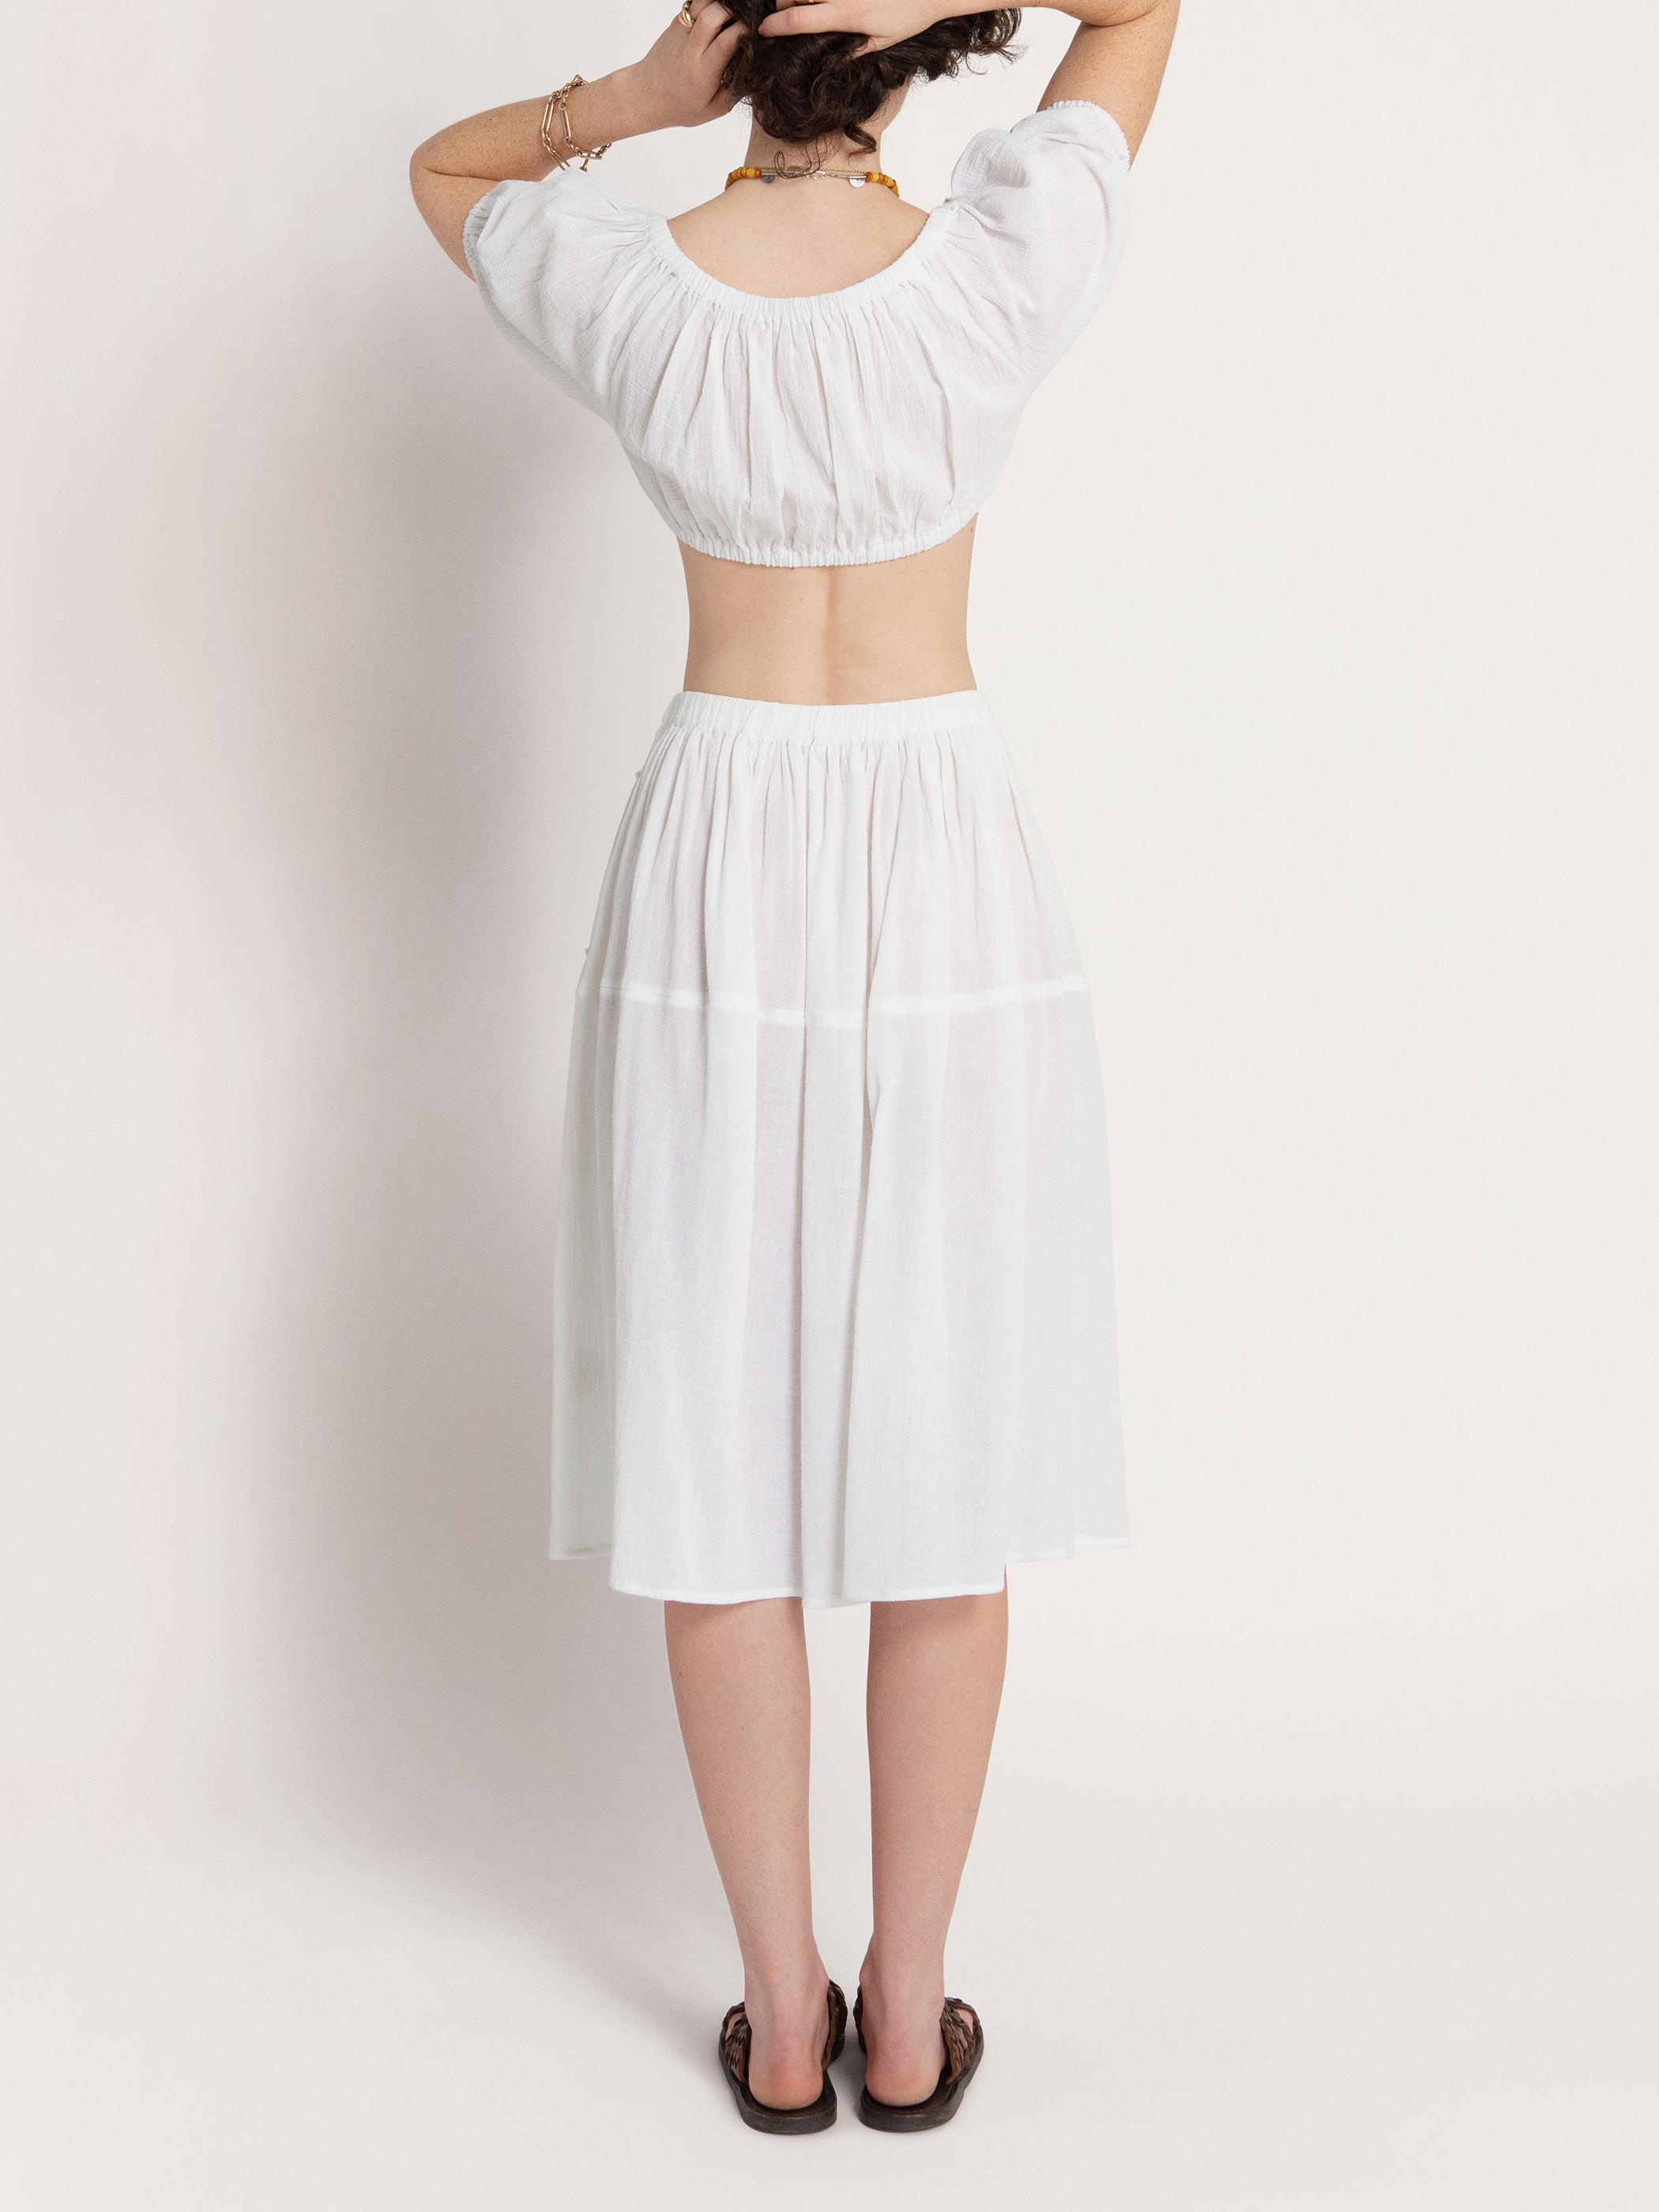 通販最新作shiisaid 2 PIECE SKIRT - WHITE デザイン スカート